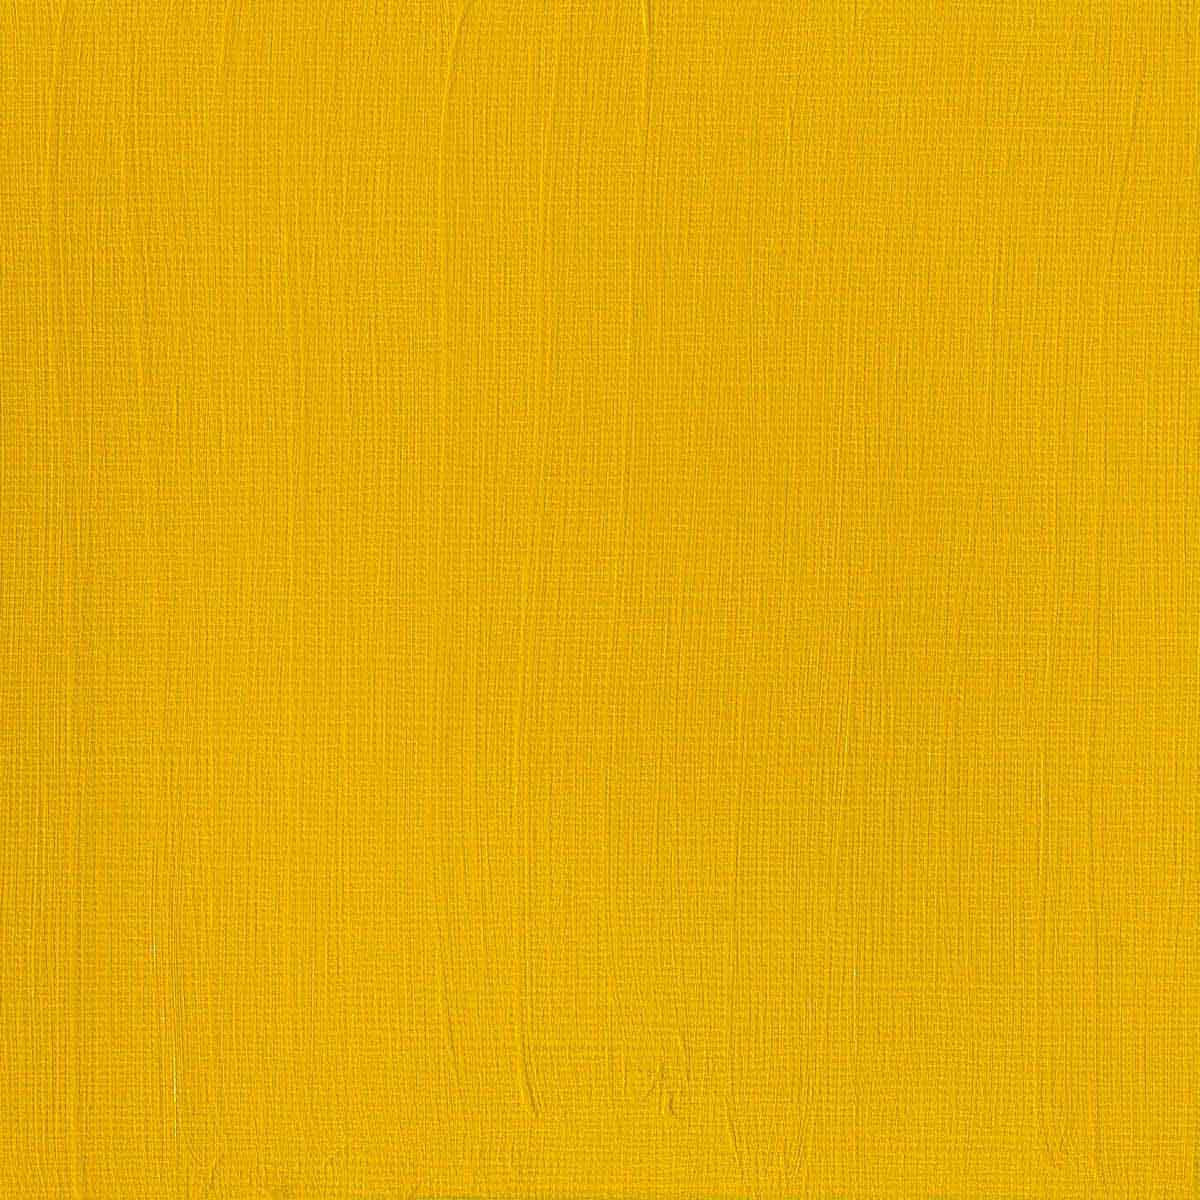 Winsor et Newton - Couleur acrylique des artistes professionnels - 60 ml - Medium jaune cadmium